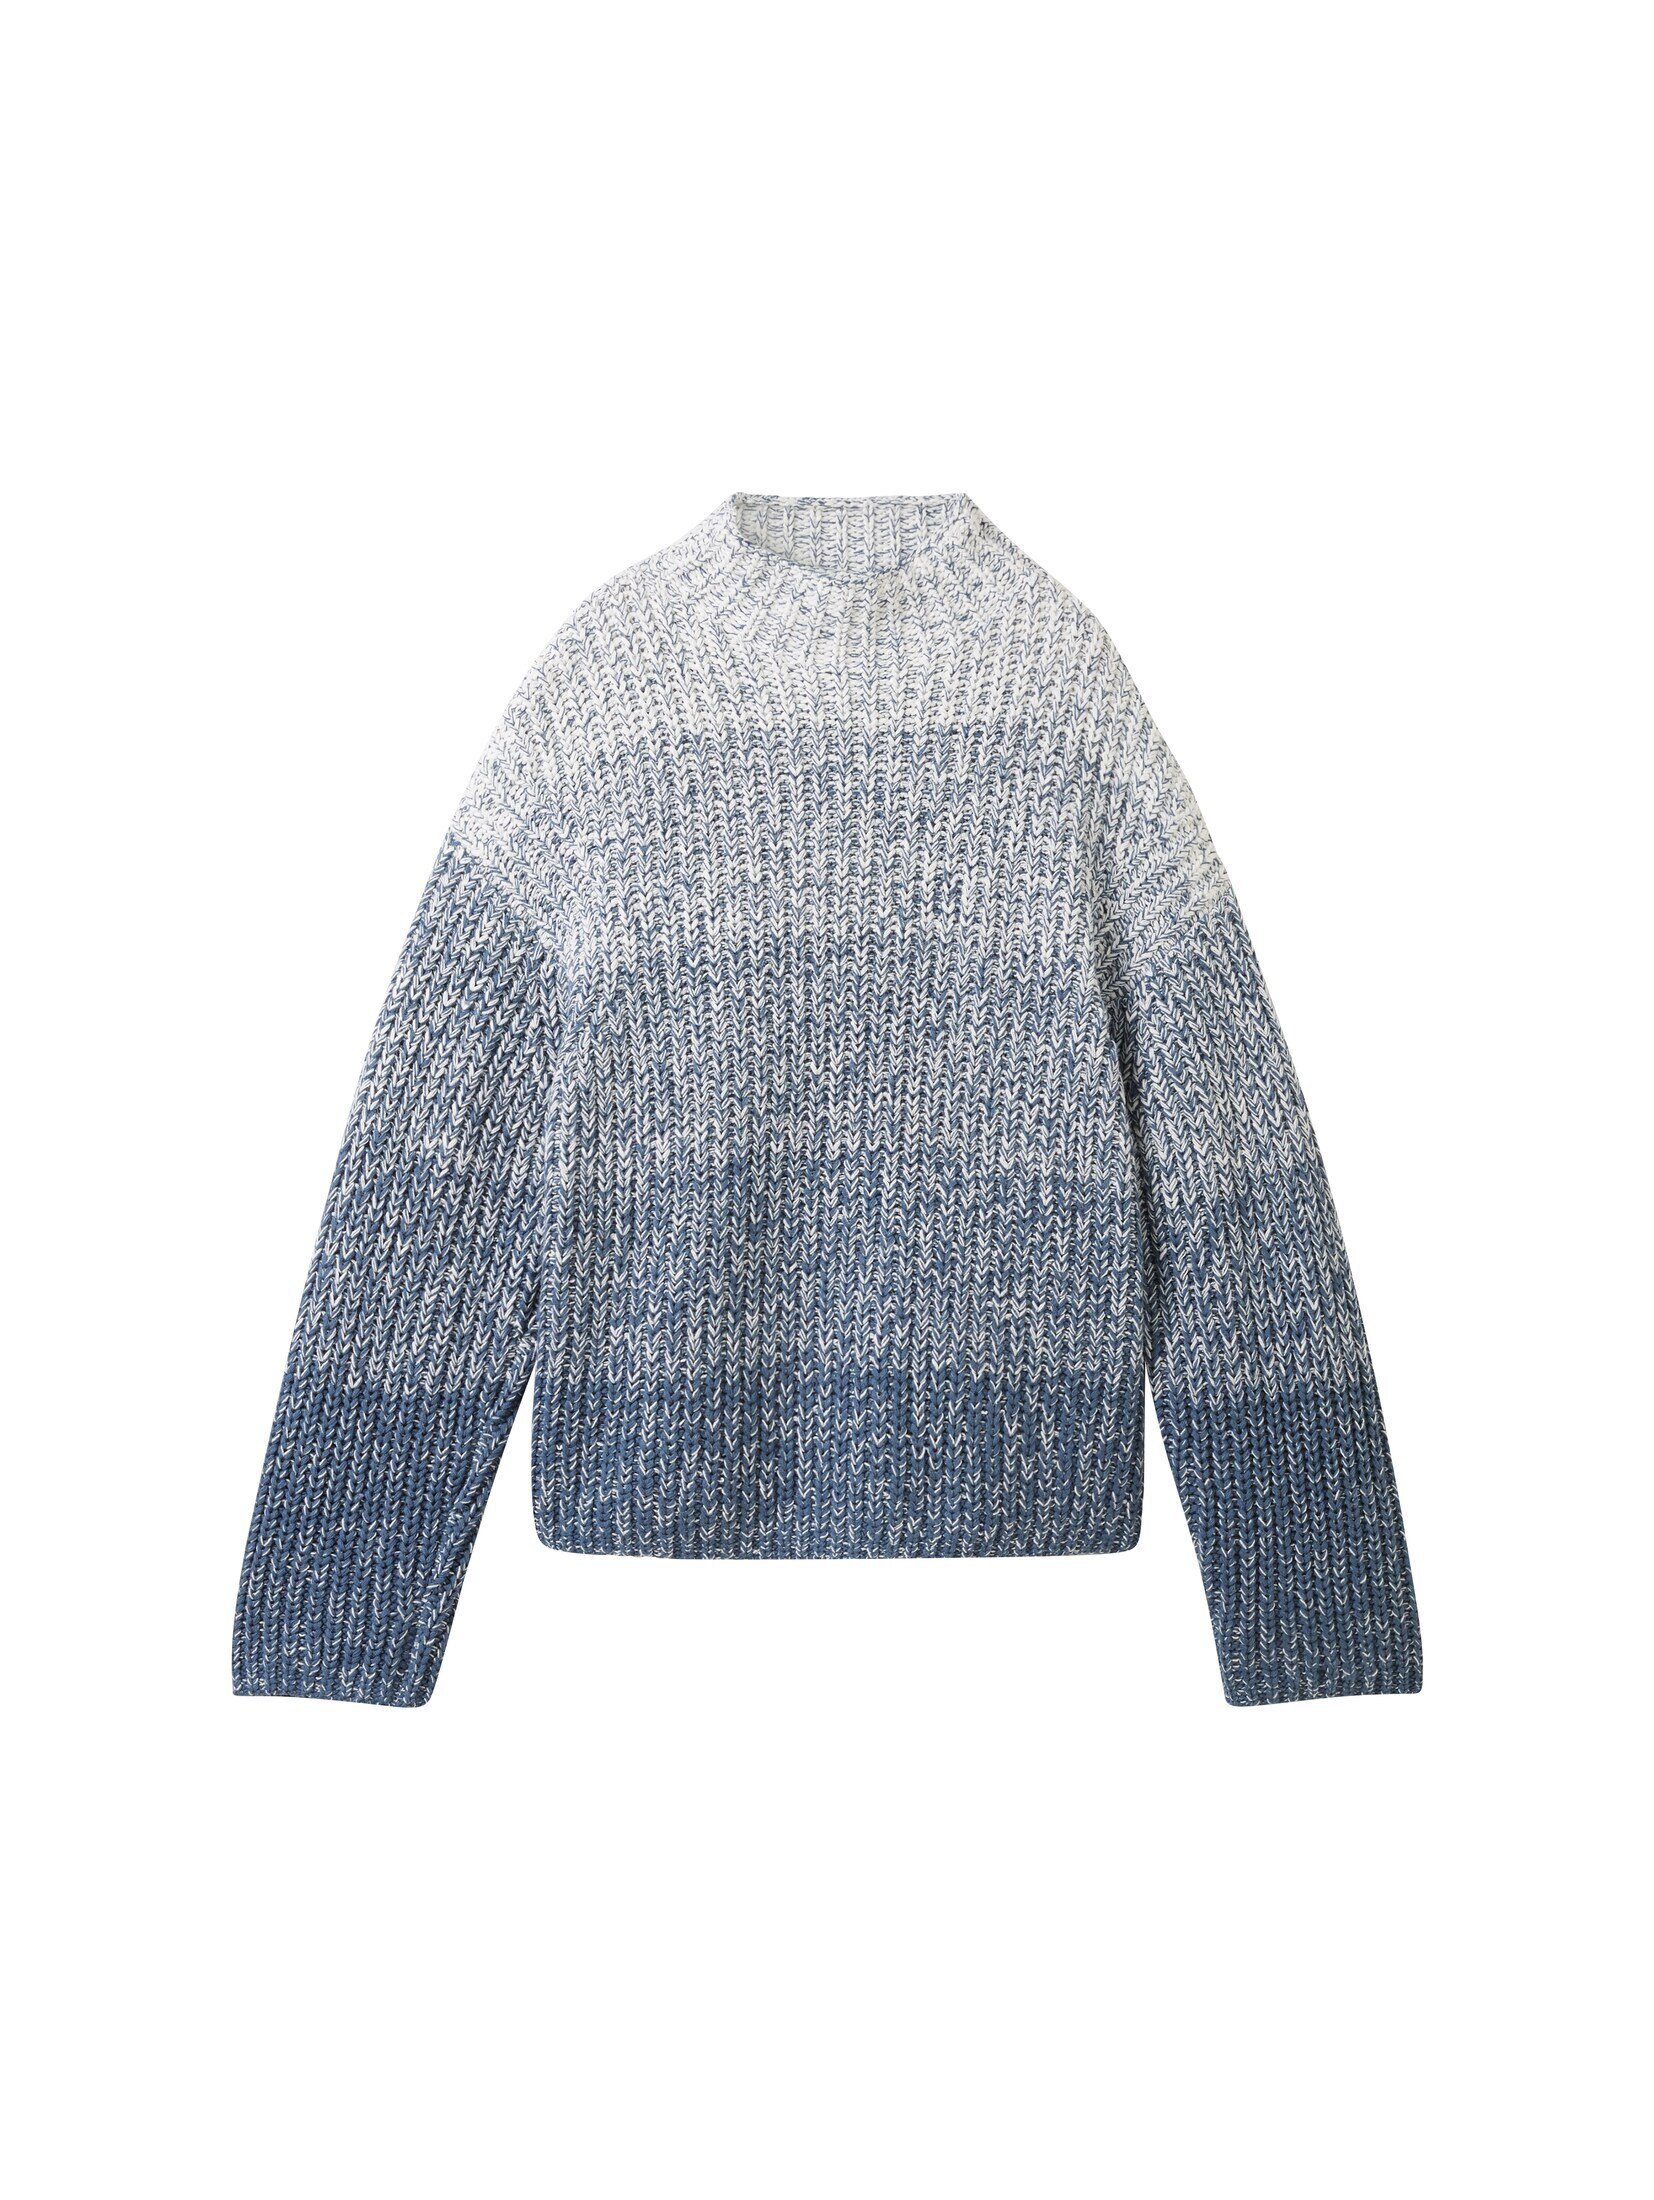 Farbverlauf Strickpullover TOM TAILOR Strickpullover knitted blue gradient mit